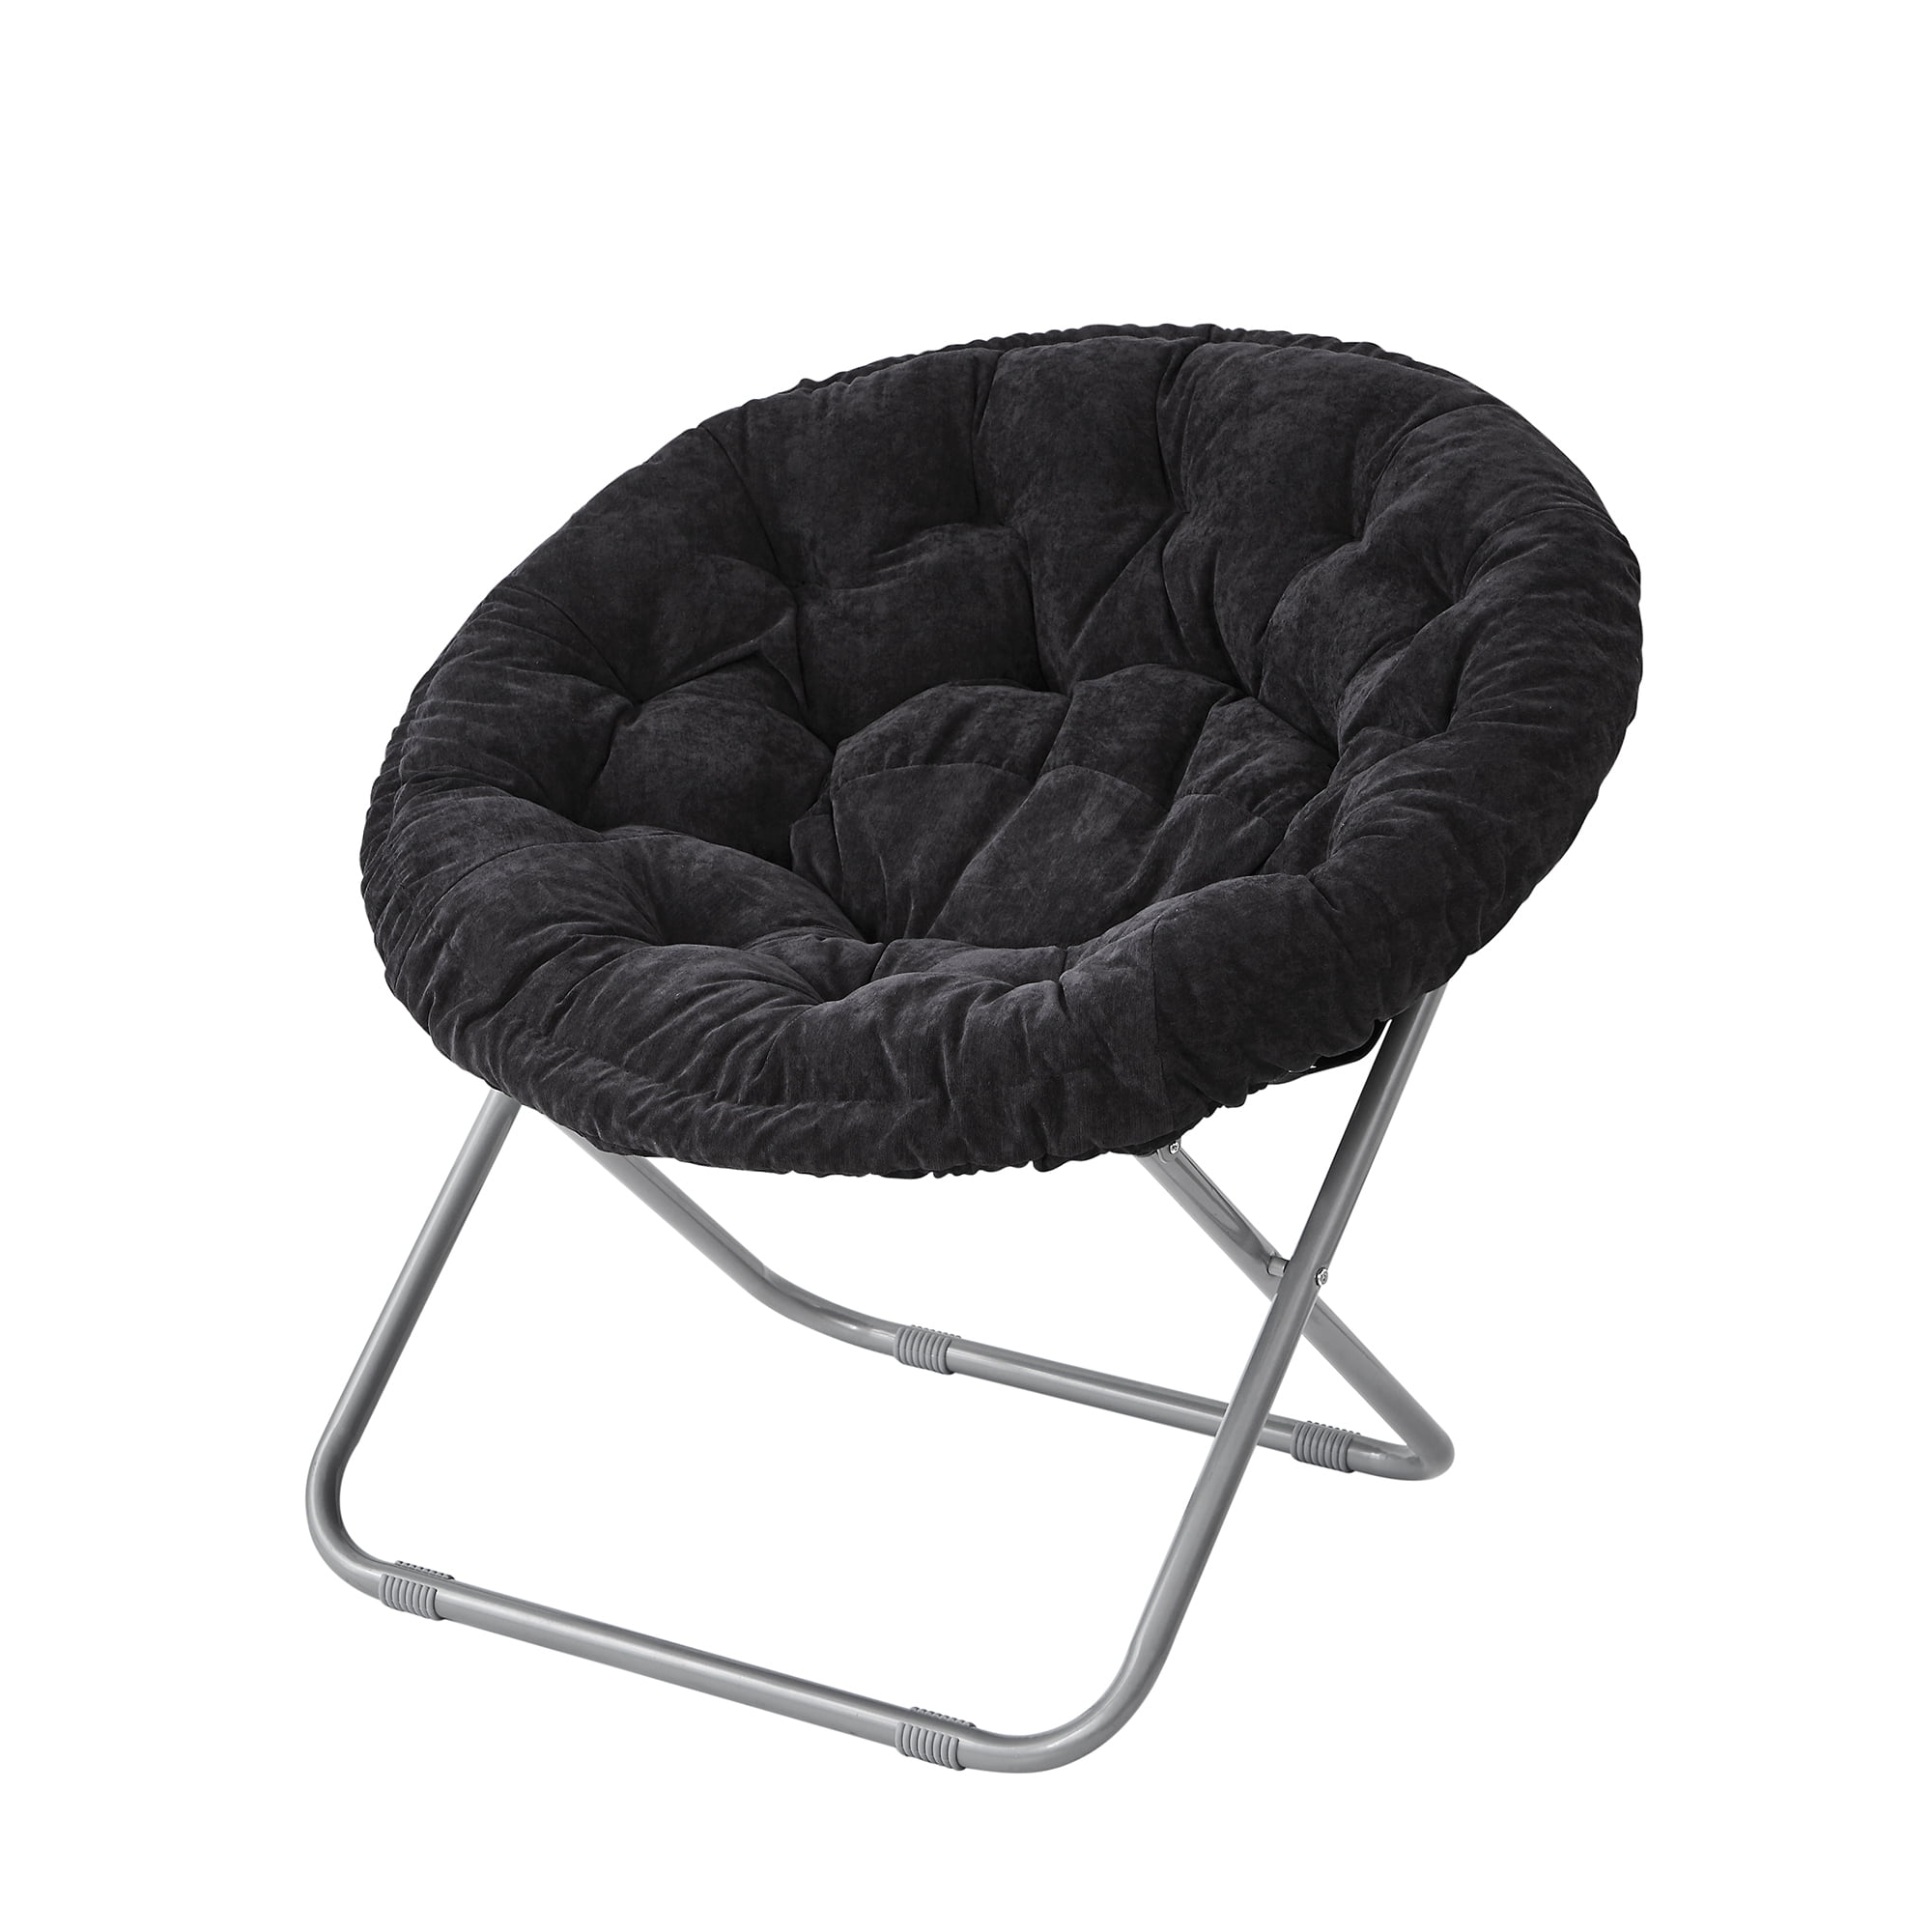 Unique Plush Moon Chair Walmart for Simple Design